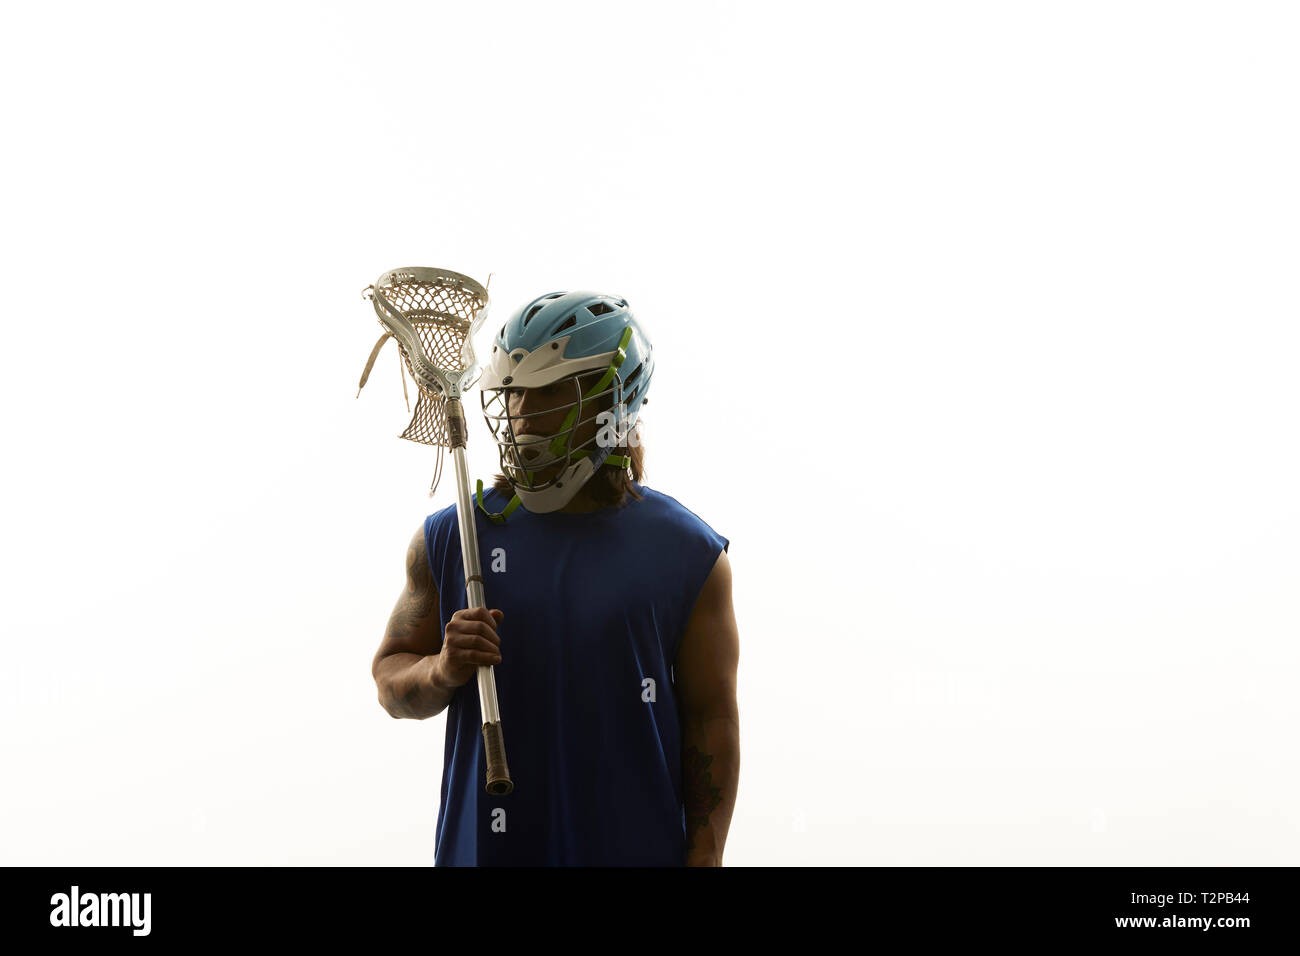 Giovane maschio lacrosse giocatore porta lacrosse stick sulla sua spalla, ritratto contro uno sfondo bianco Foto Stock